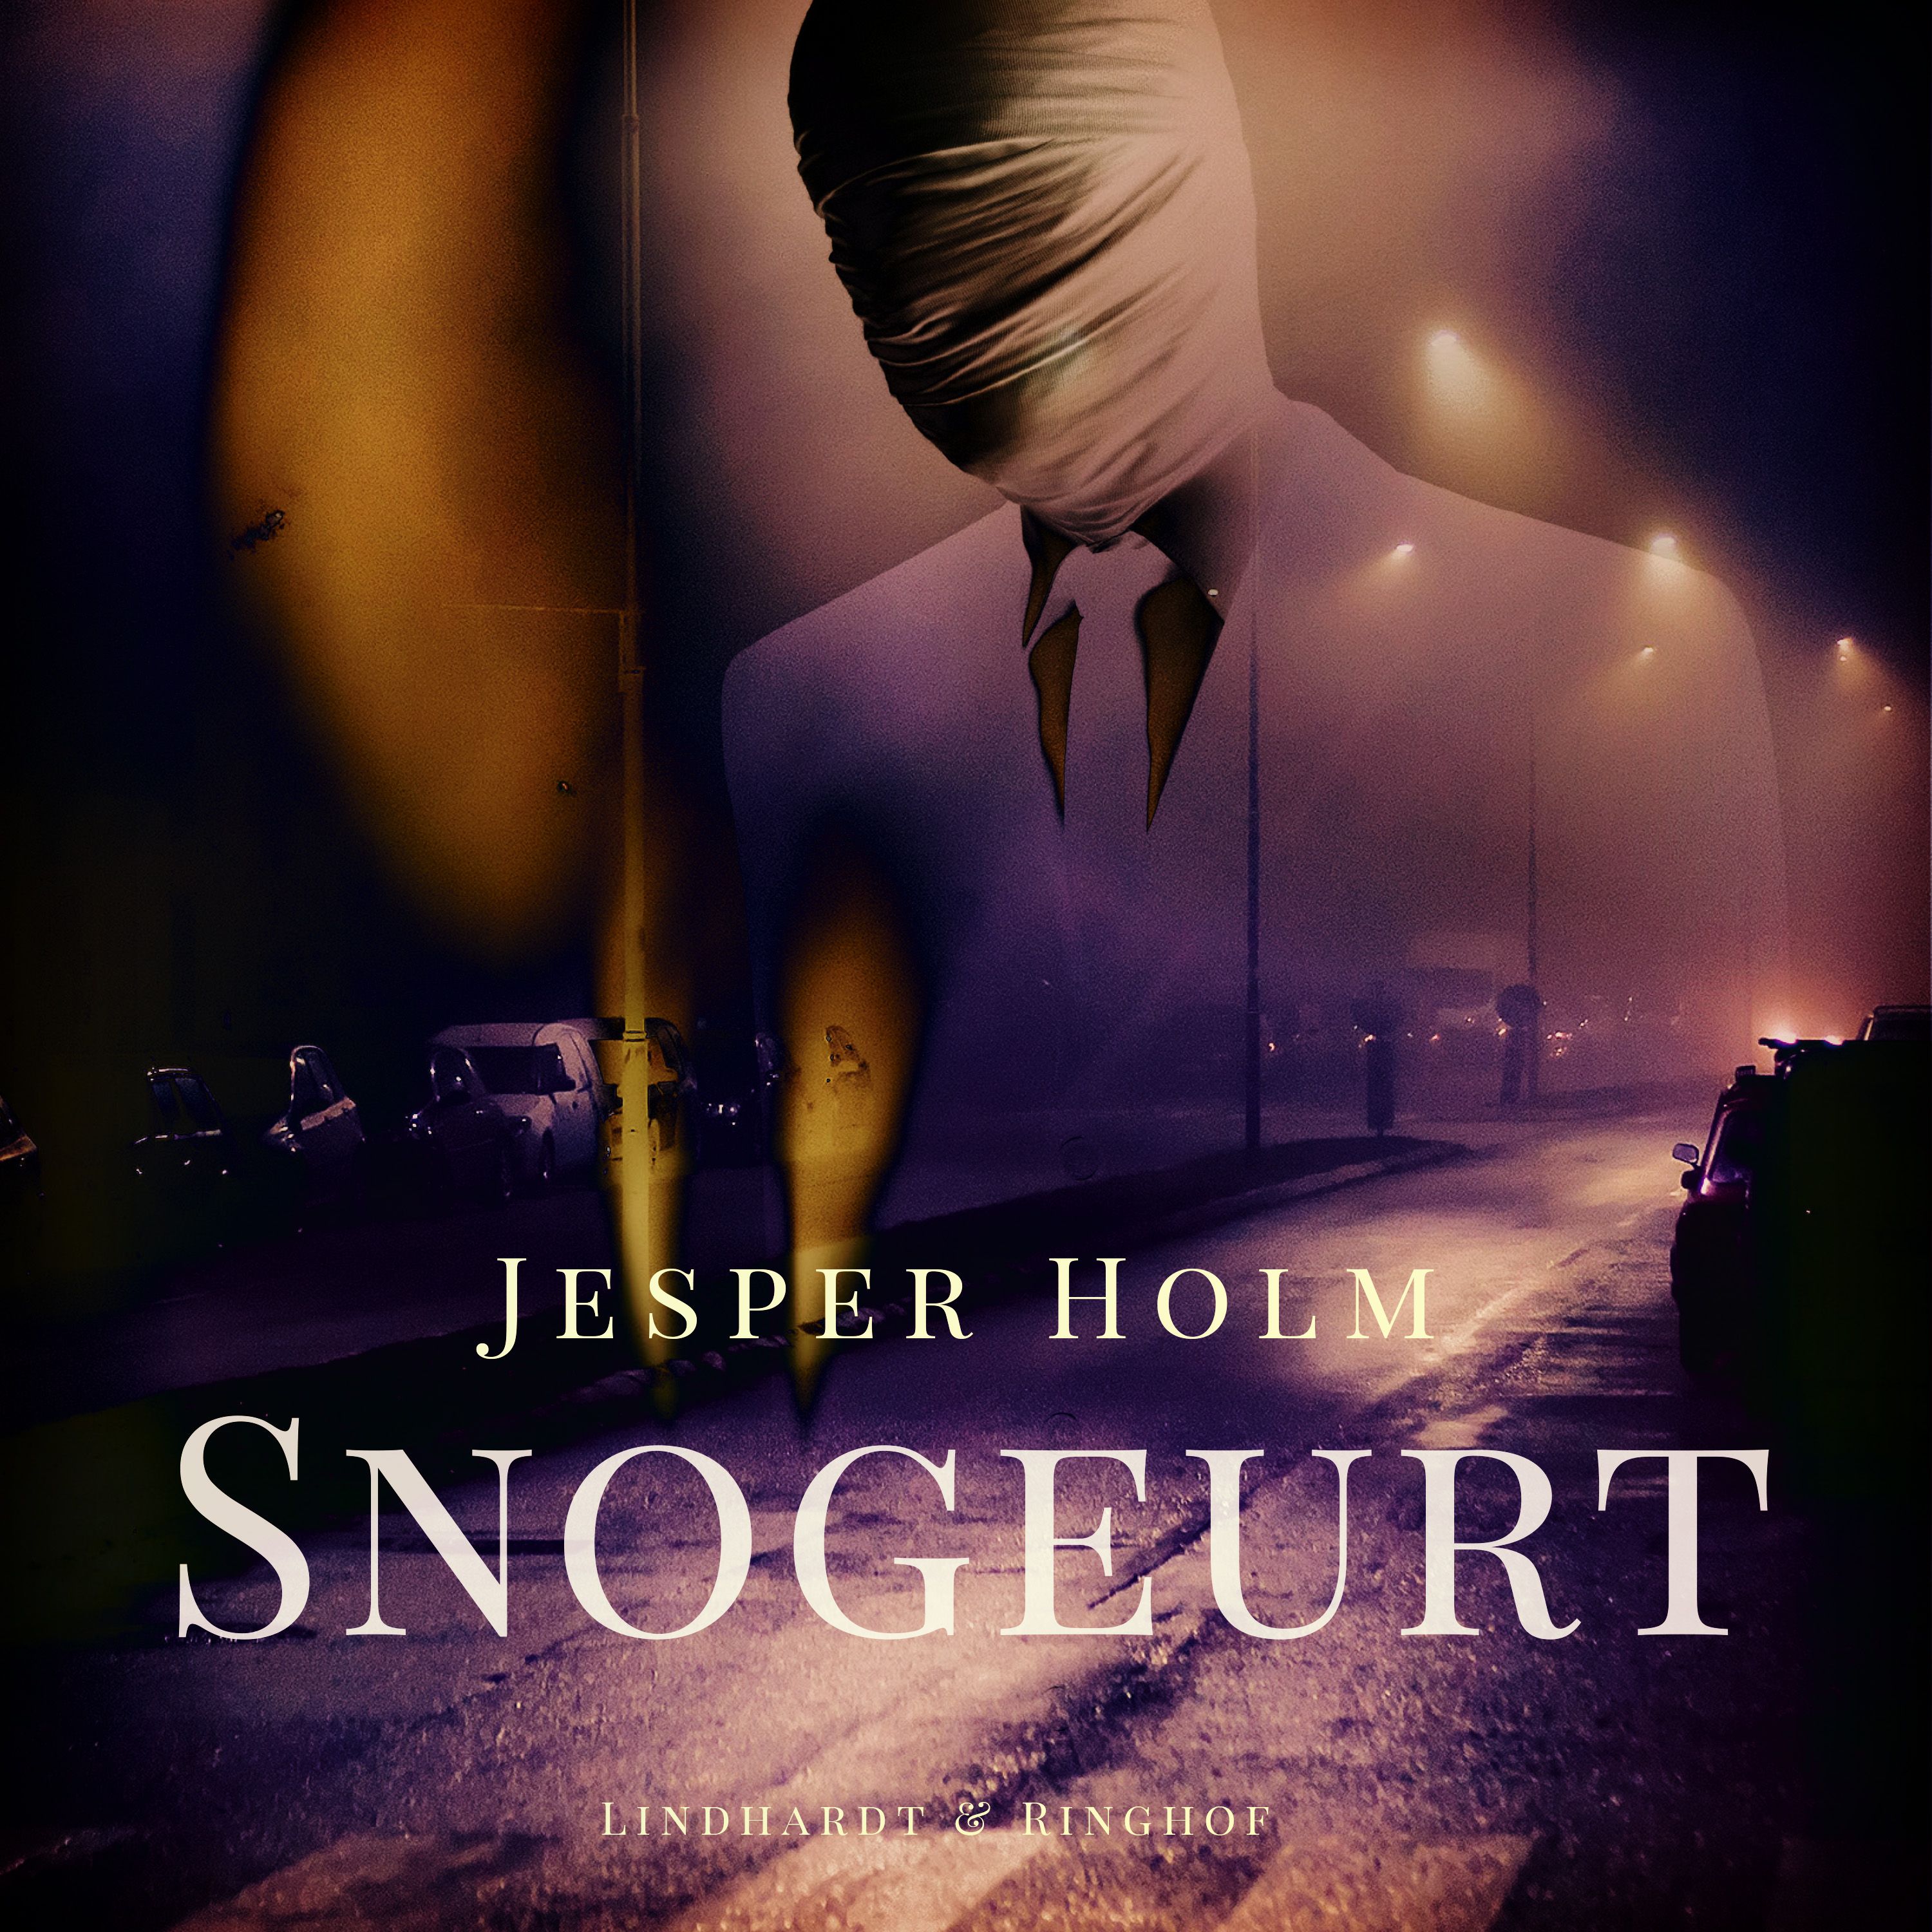 Snogeurt, ljudbok av Jesper Holm